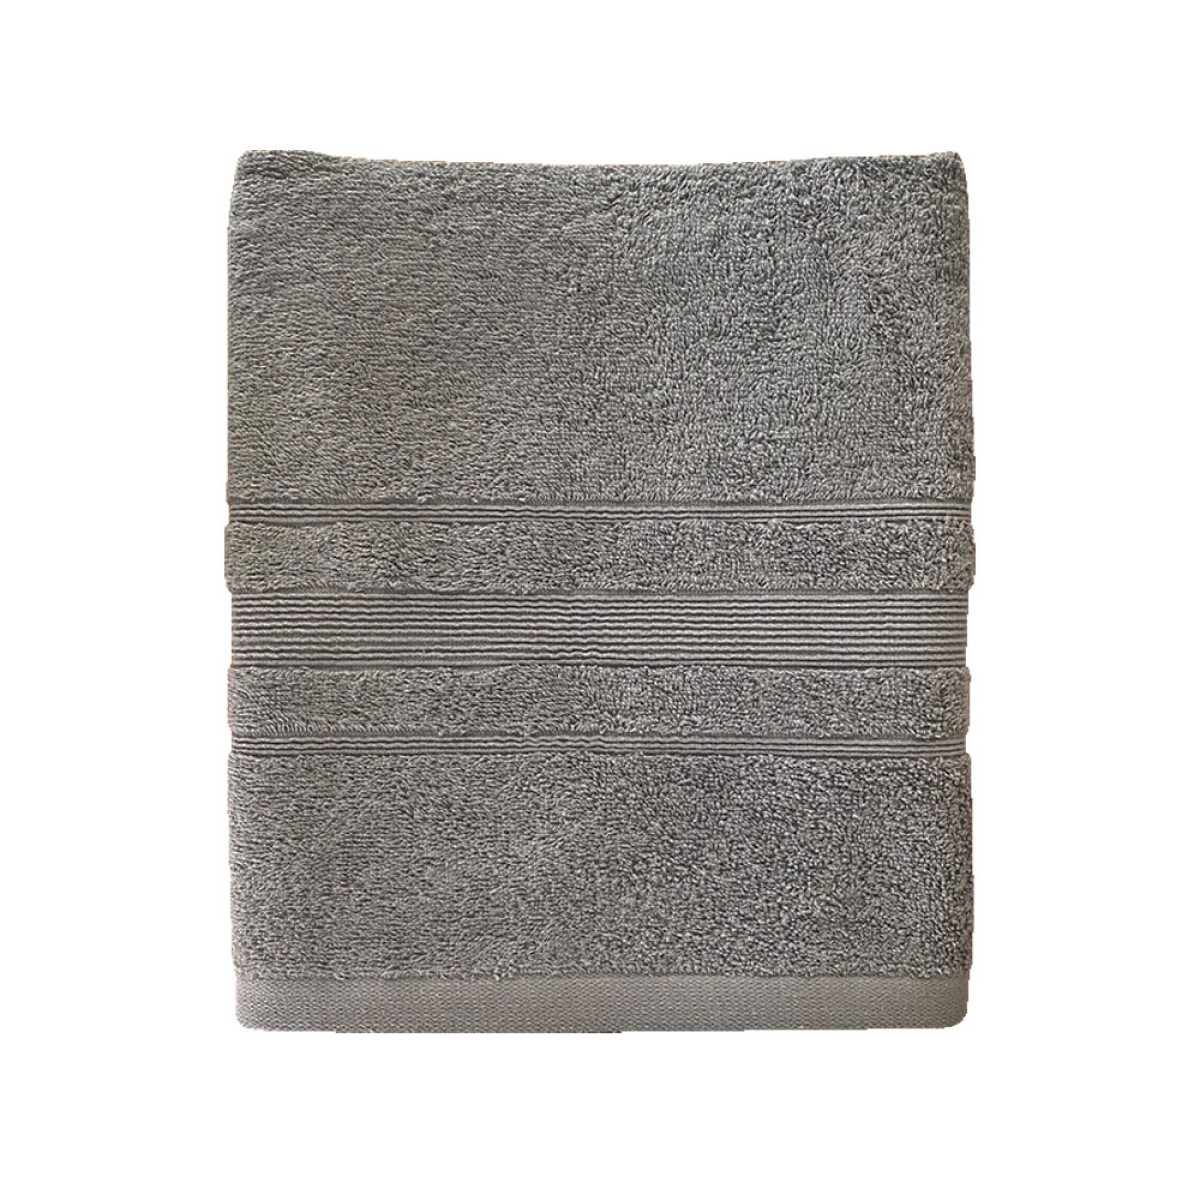 Πετσέτα Σώματος 550grs (70x140) 100% Βαμβάκι με μπορντούρα με ανάγλυφο σχέδιο σκούρο γκρι χρώμα Sidirela Line E-3203-4